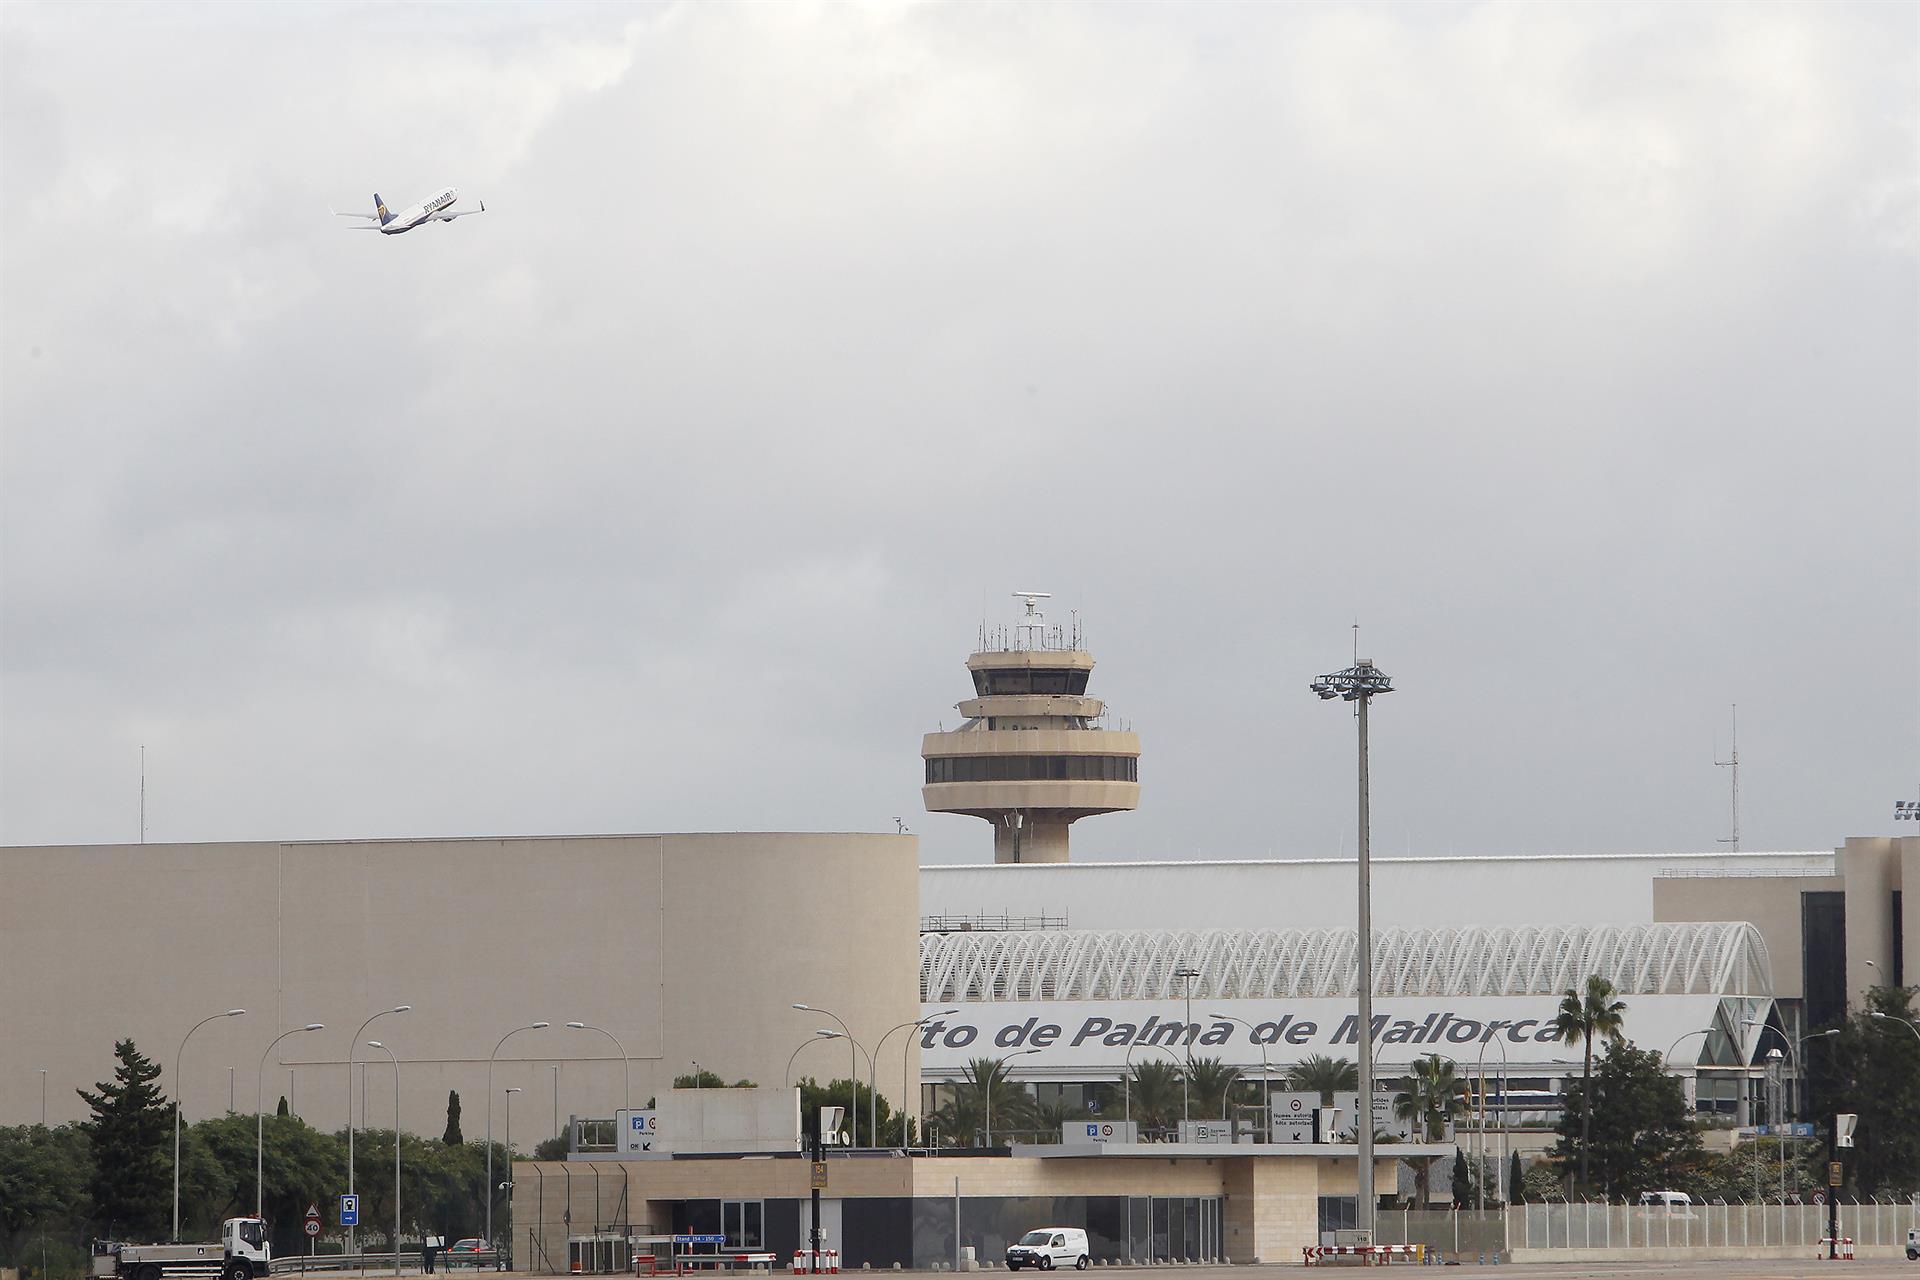 Vista general del aeropuerto de Palma